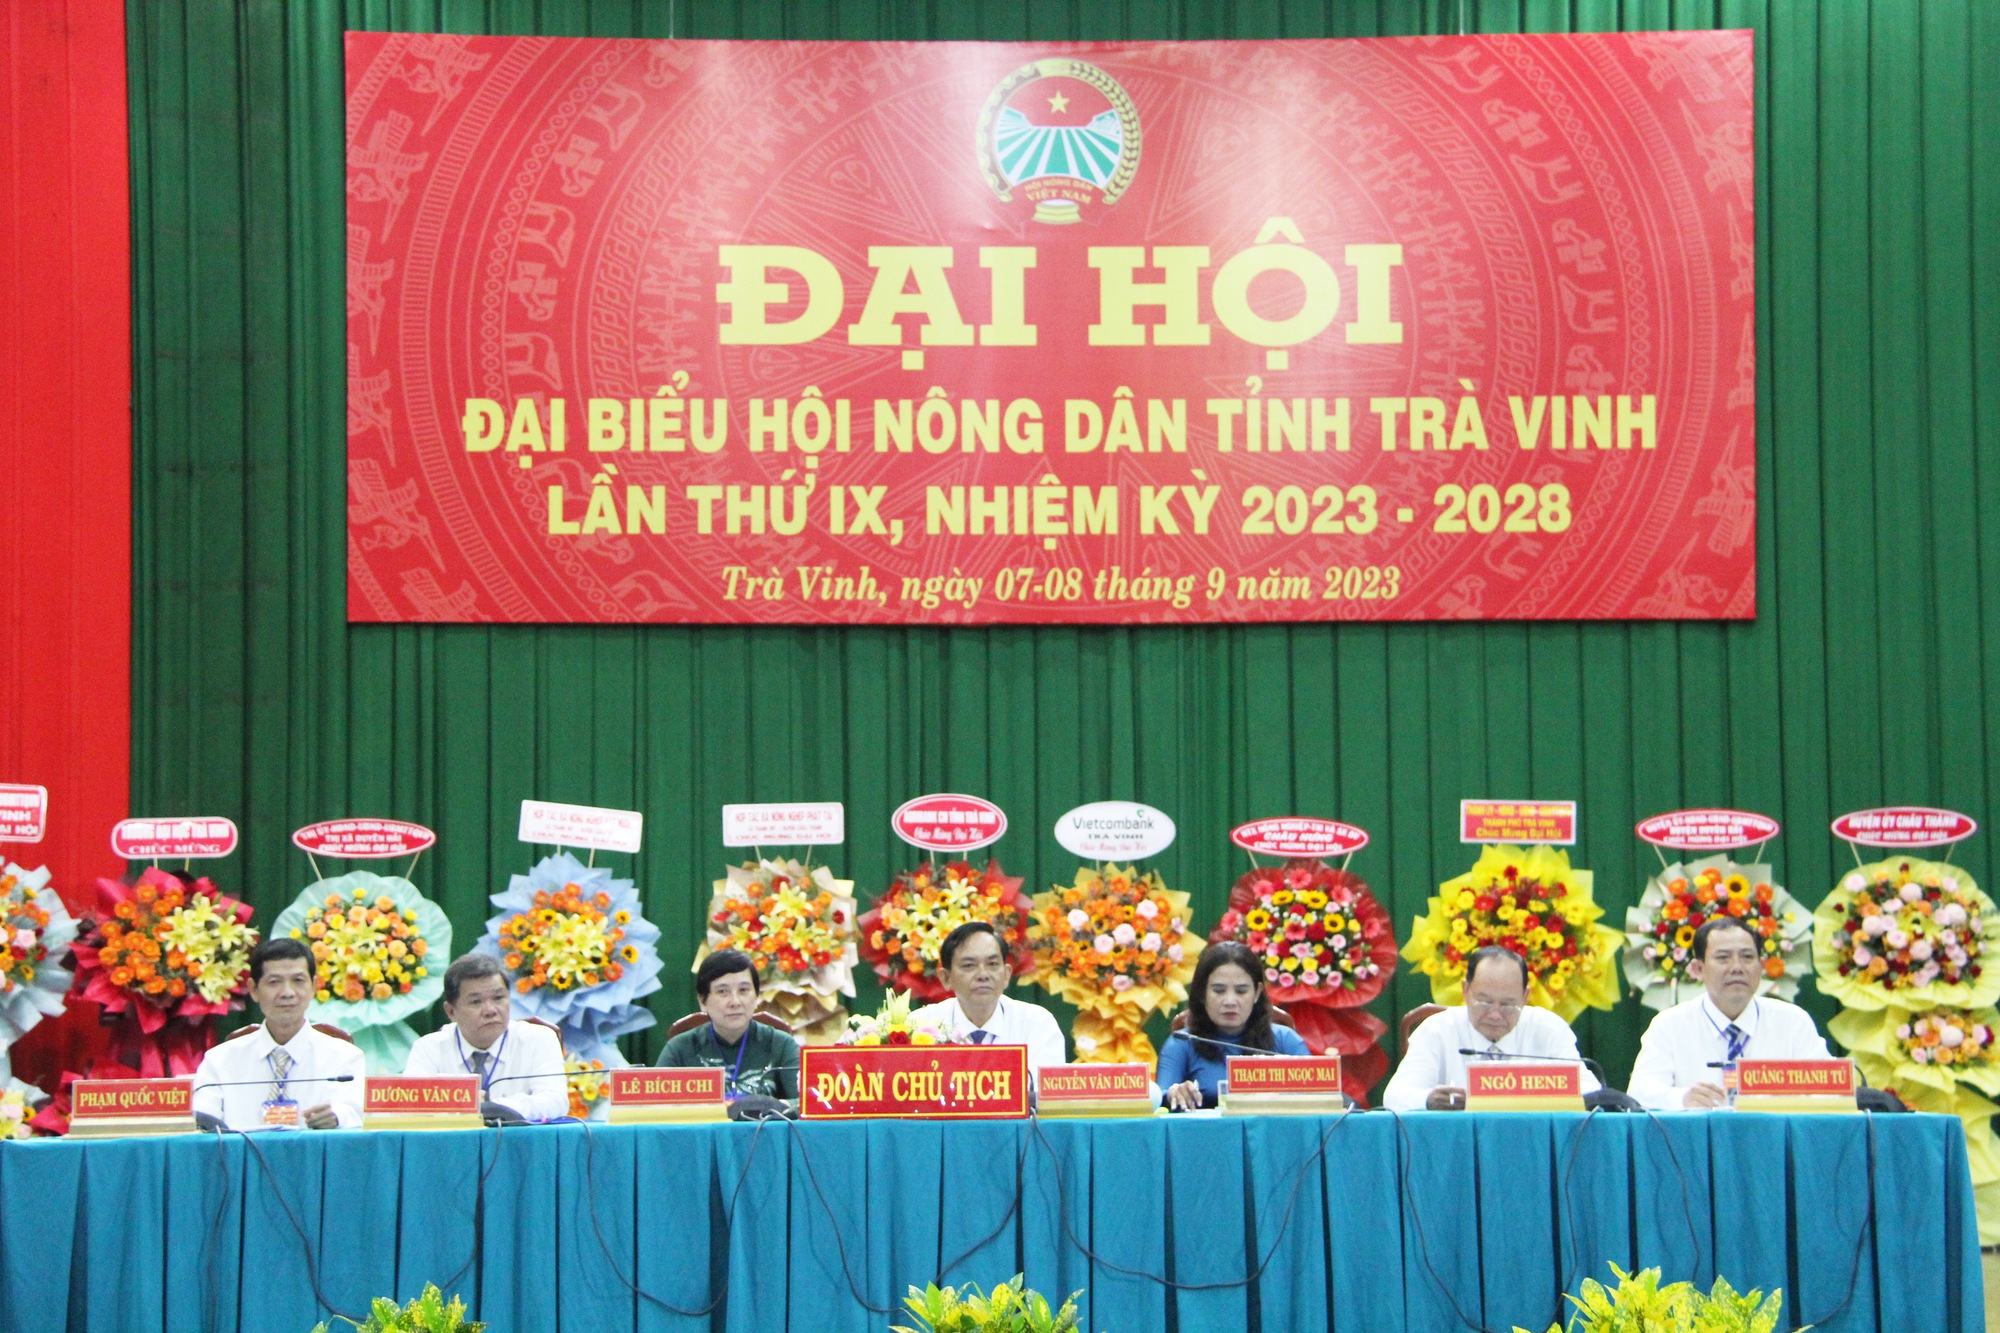 Bí thư Tỉnh ủy Trà Vinh, Phó Chủ tịch TƯ Hội NDVN dự, chỉ đạo Đại hội Hội Nông dân tỉnh Trà Vinh - Ảnh 4.